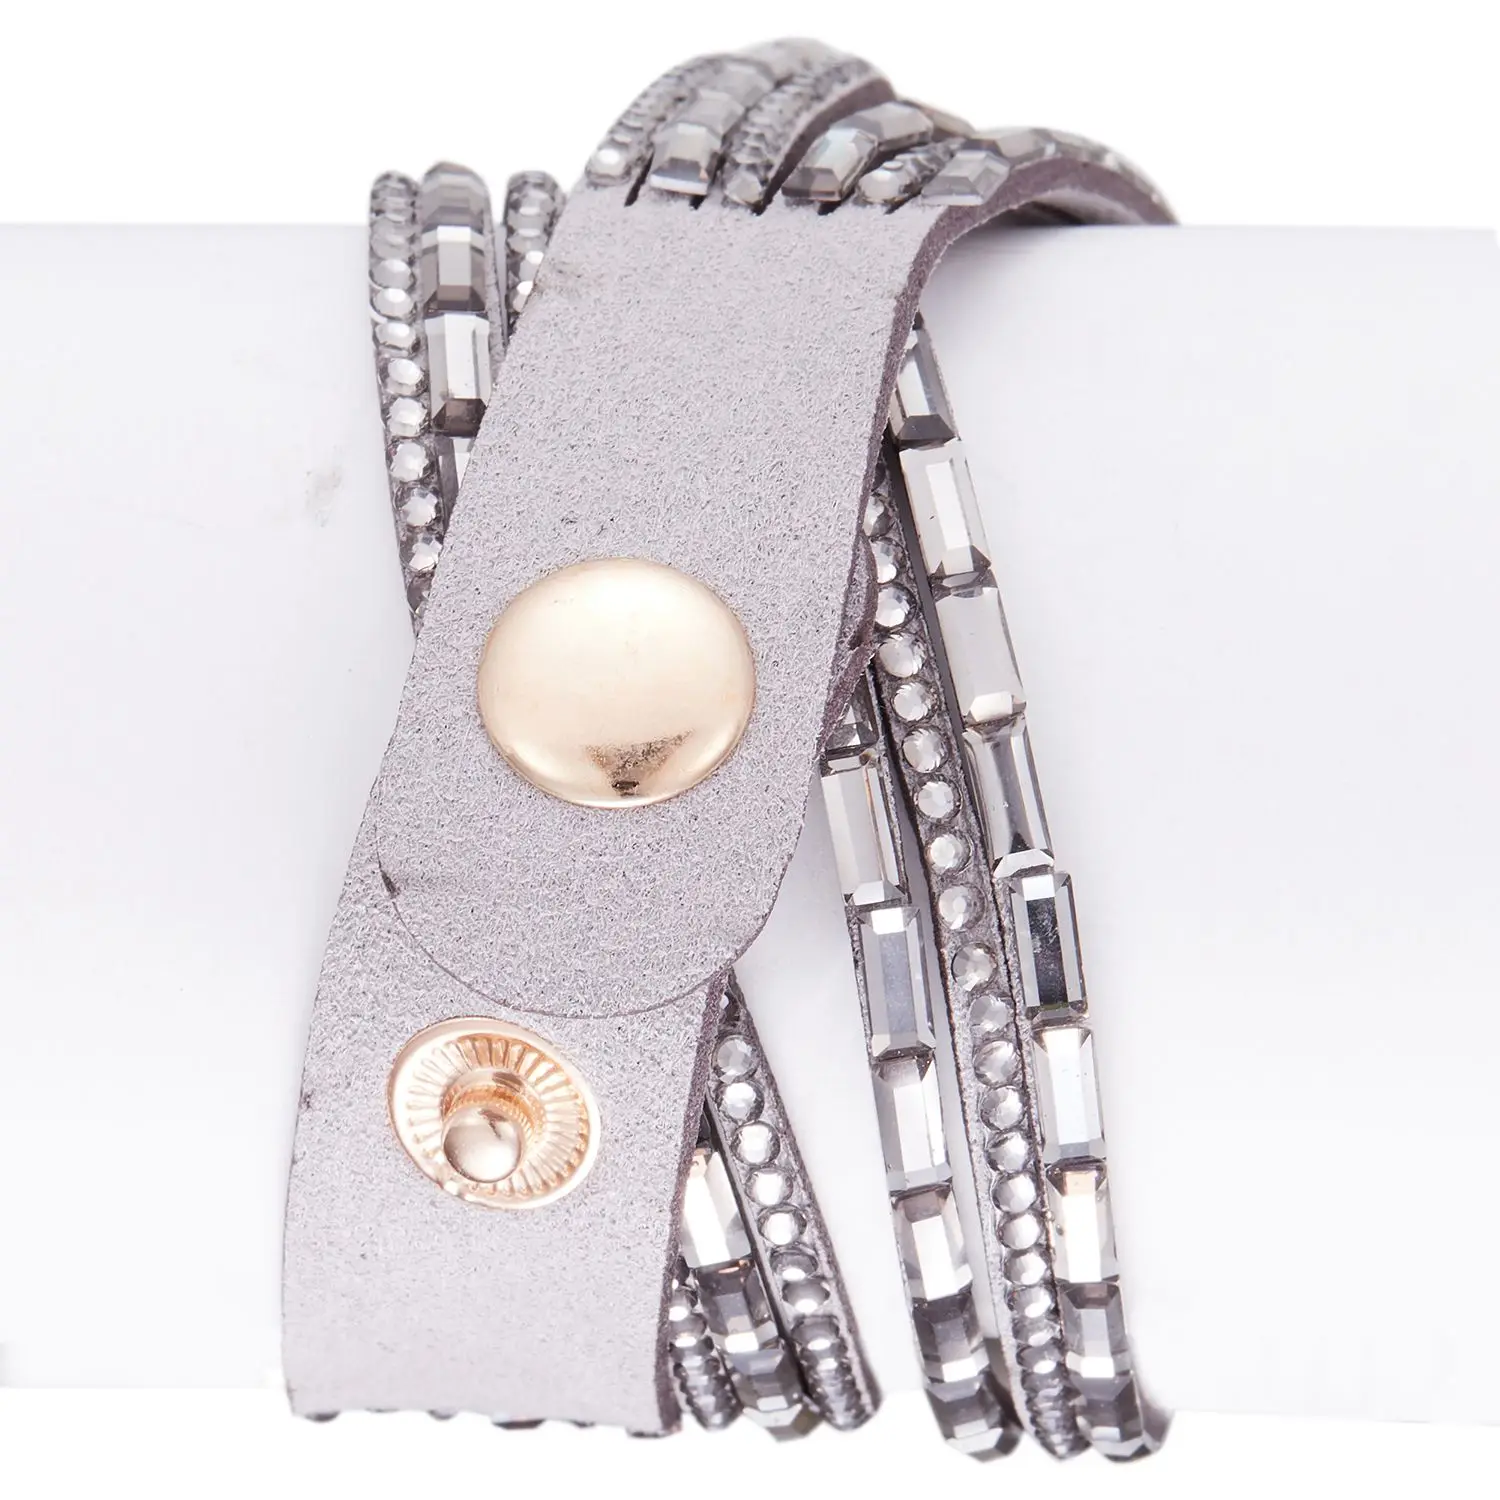 Duoya брендовые модные часы-браслет Для женщин Повседневное кожа часы Женское платье кварцевые наручные электронные, D064